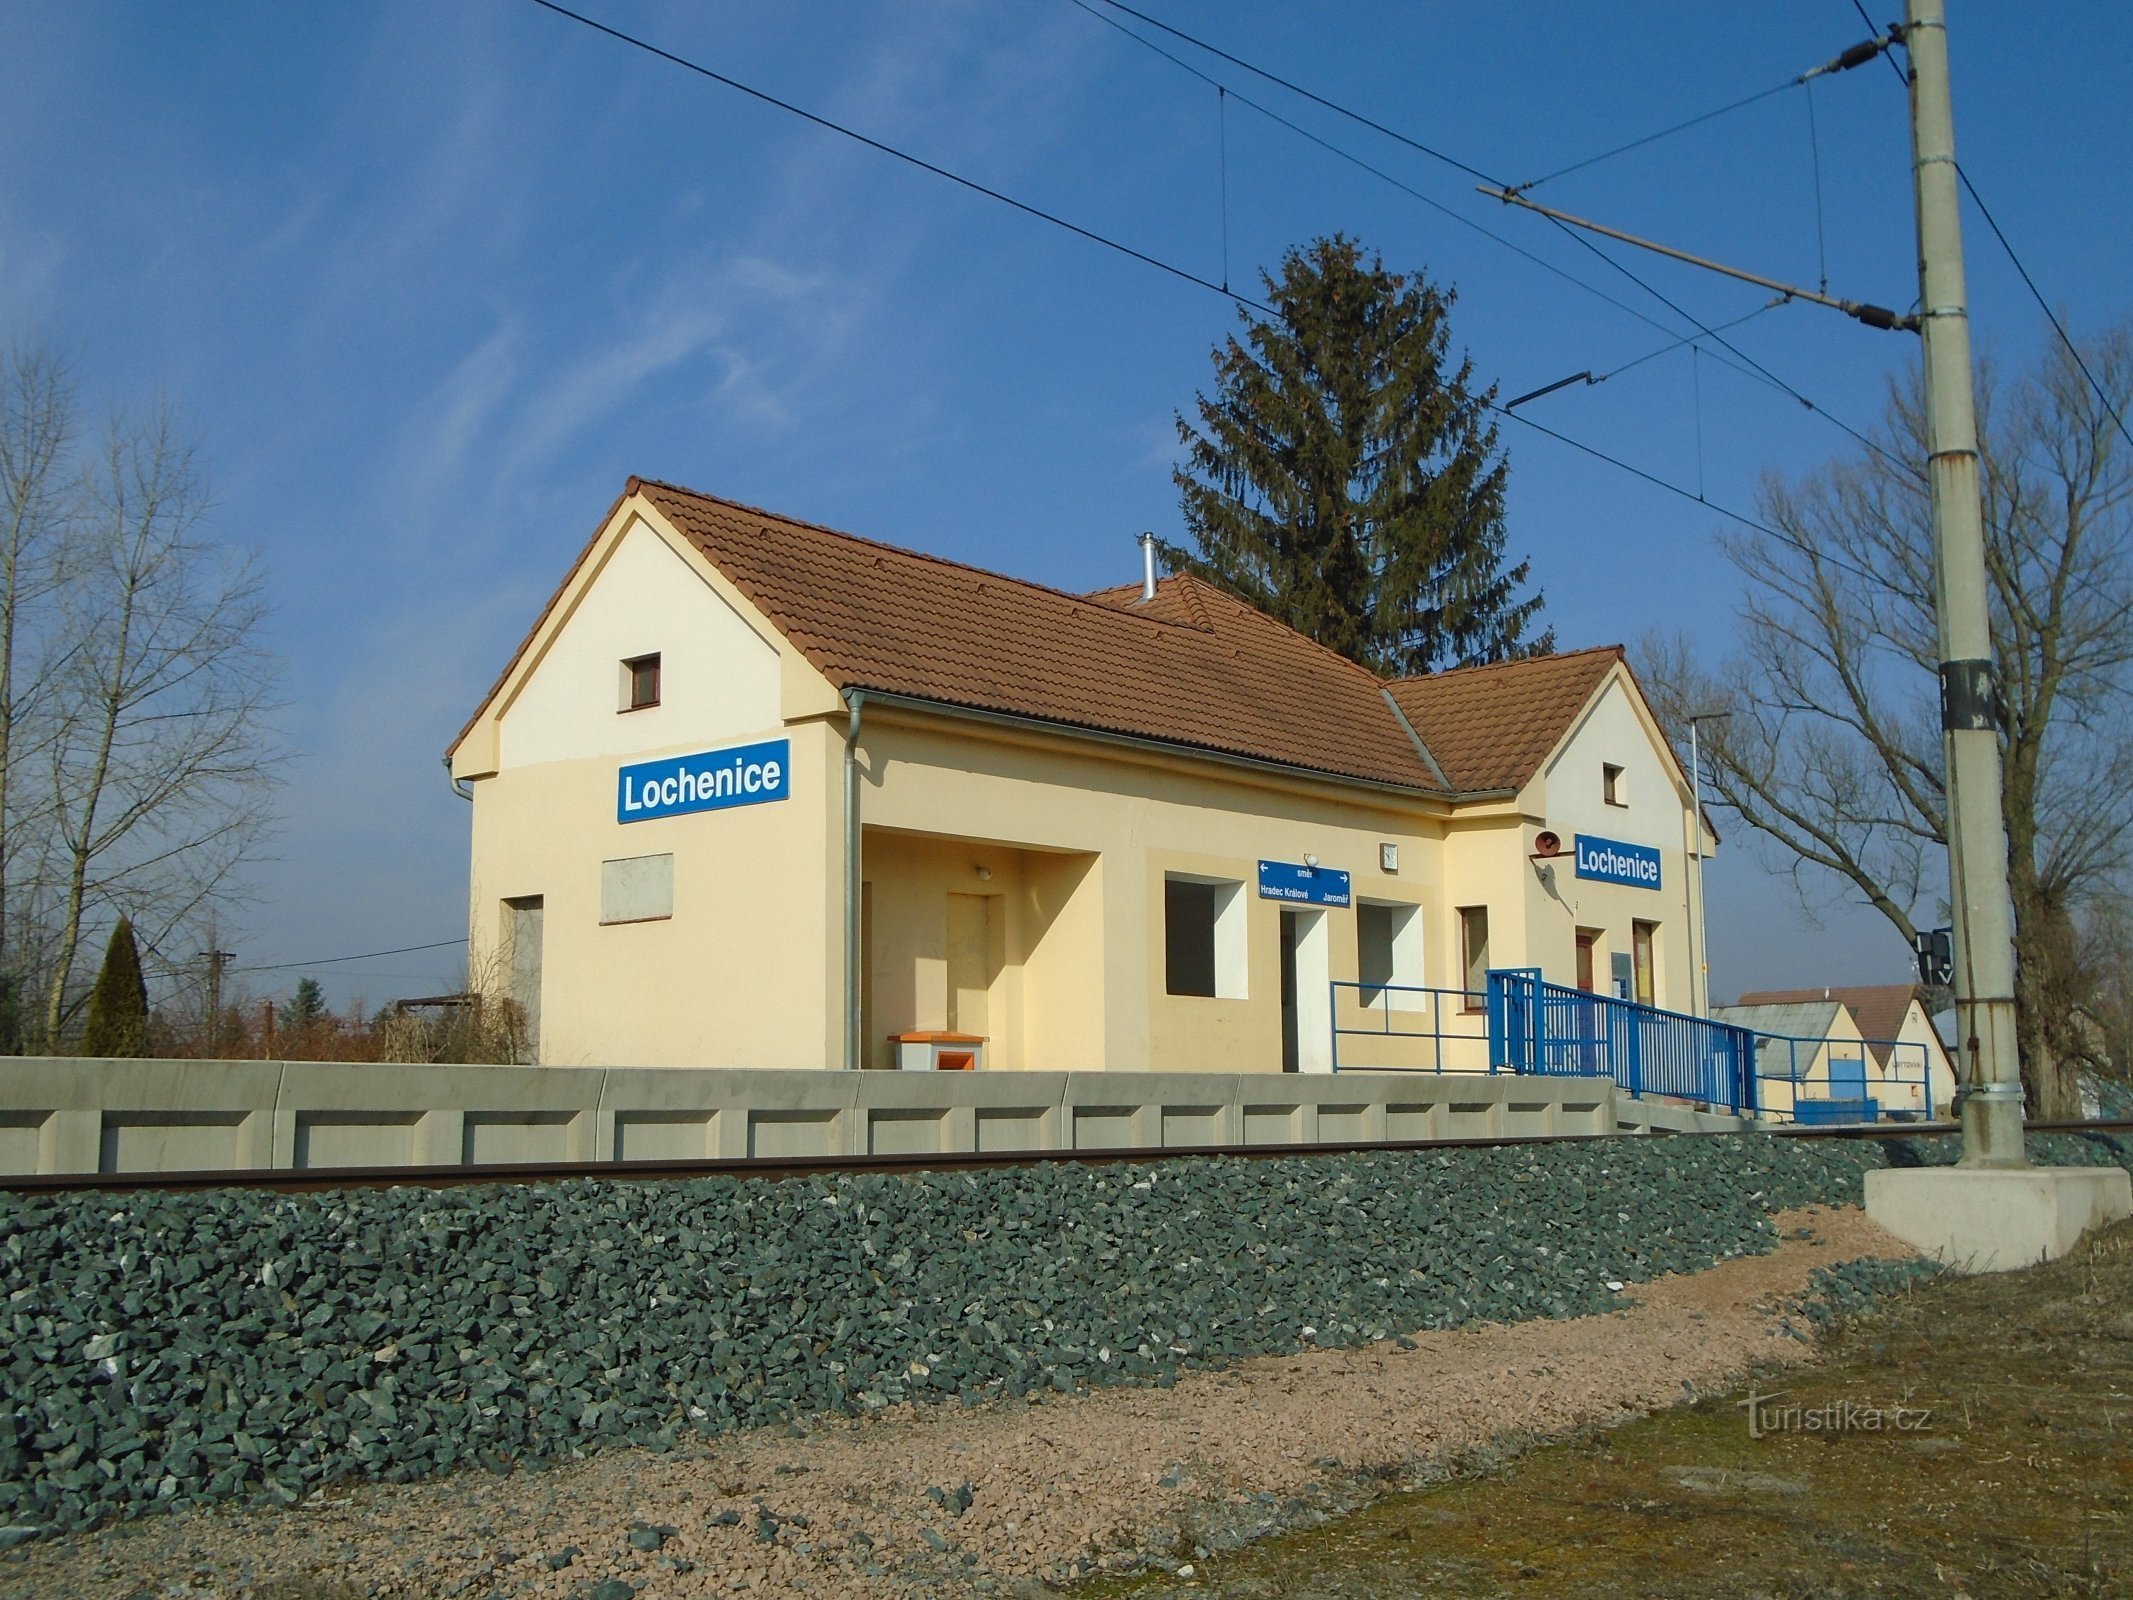 Stazione ferroviaria (Lochenice)